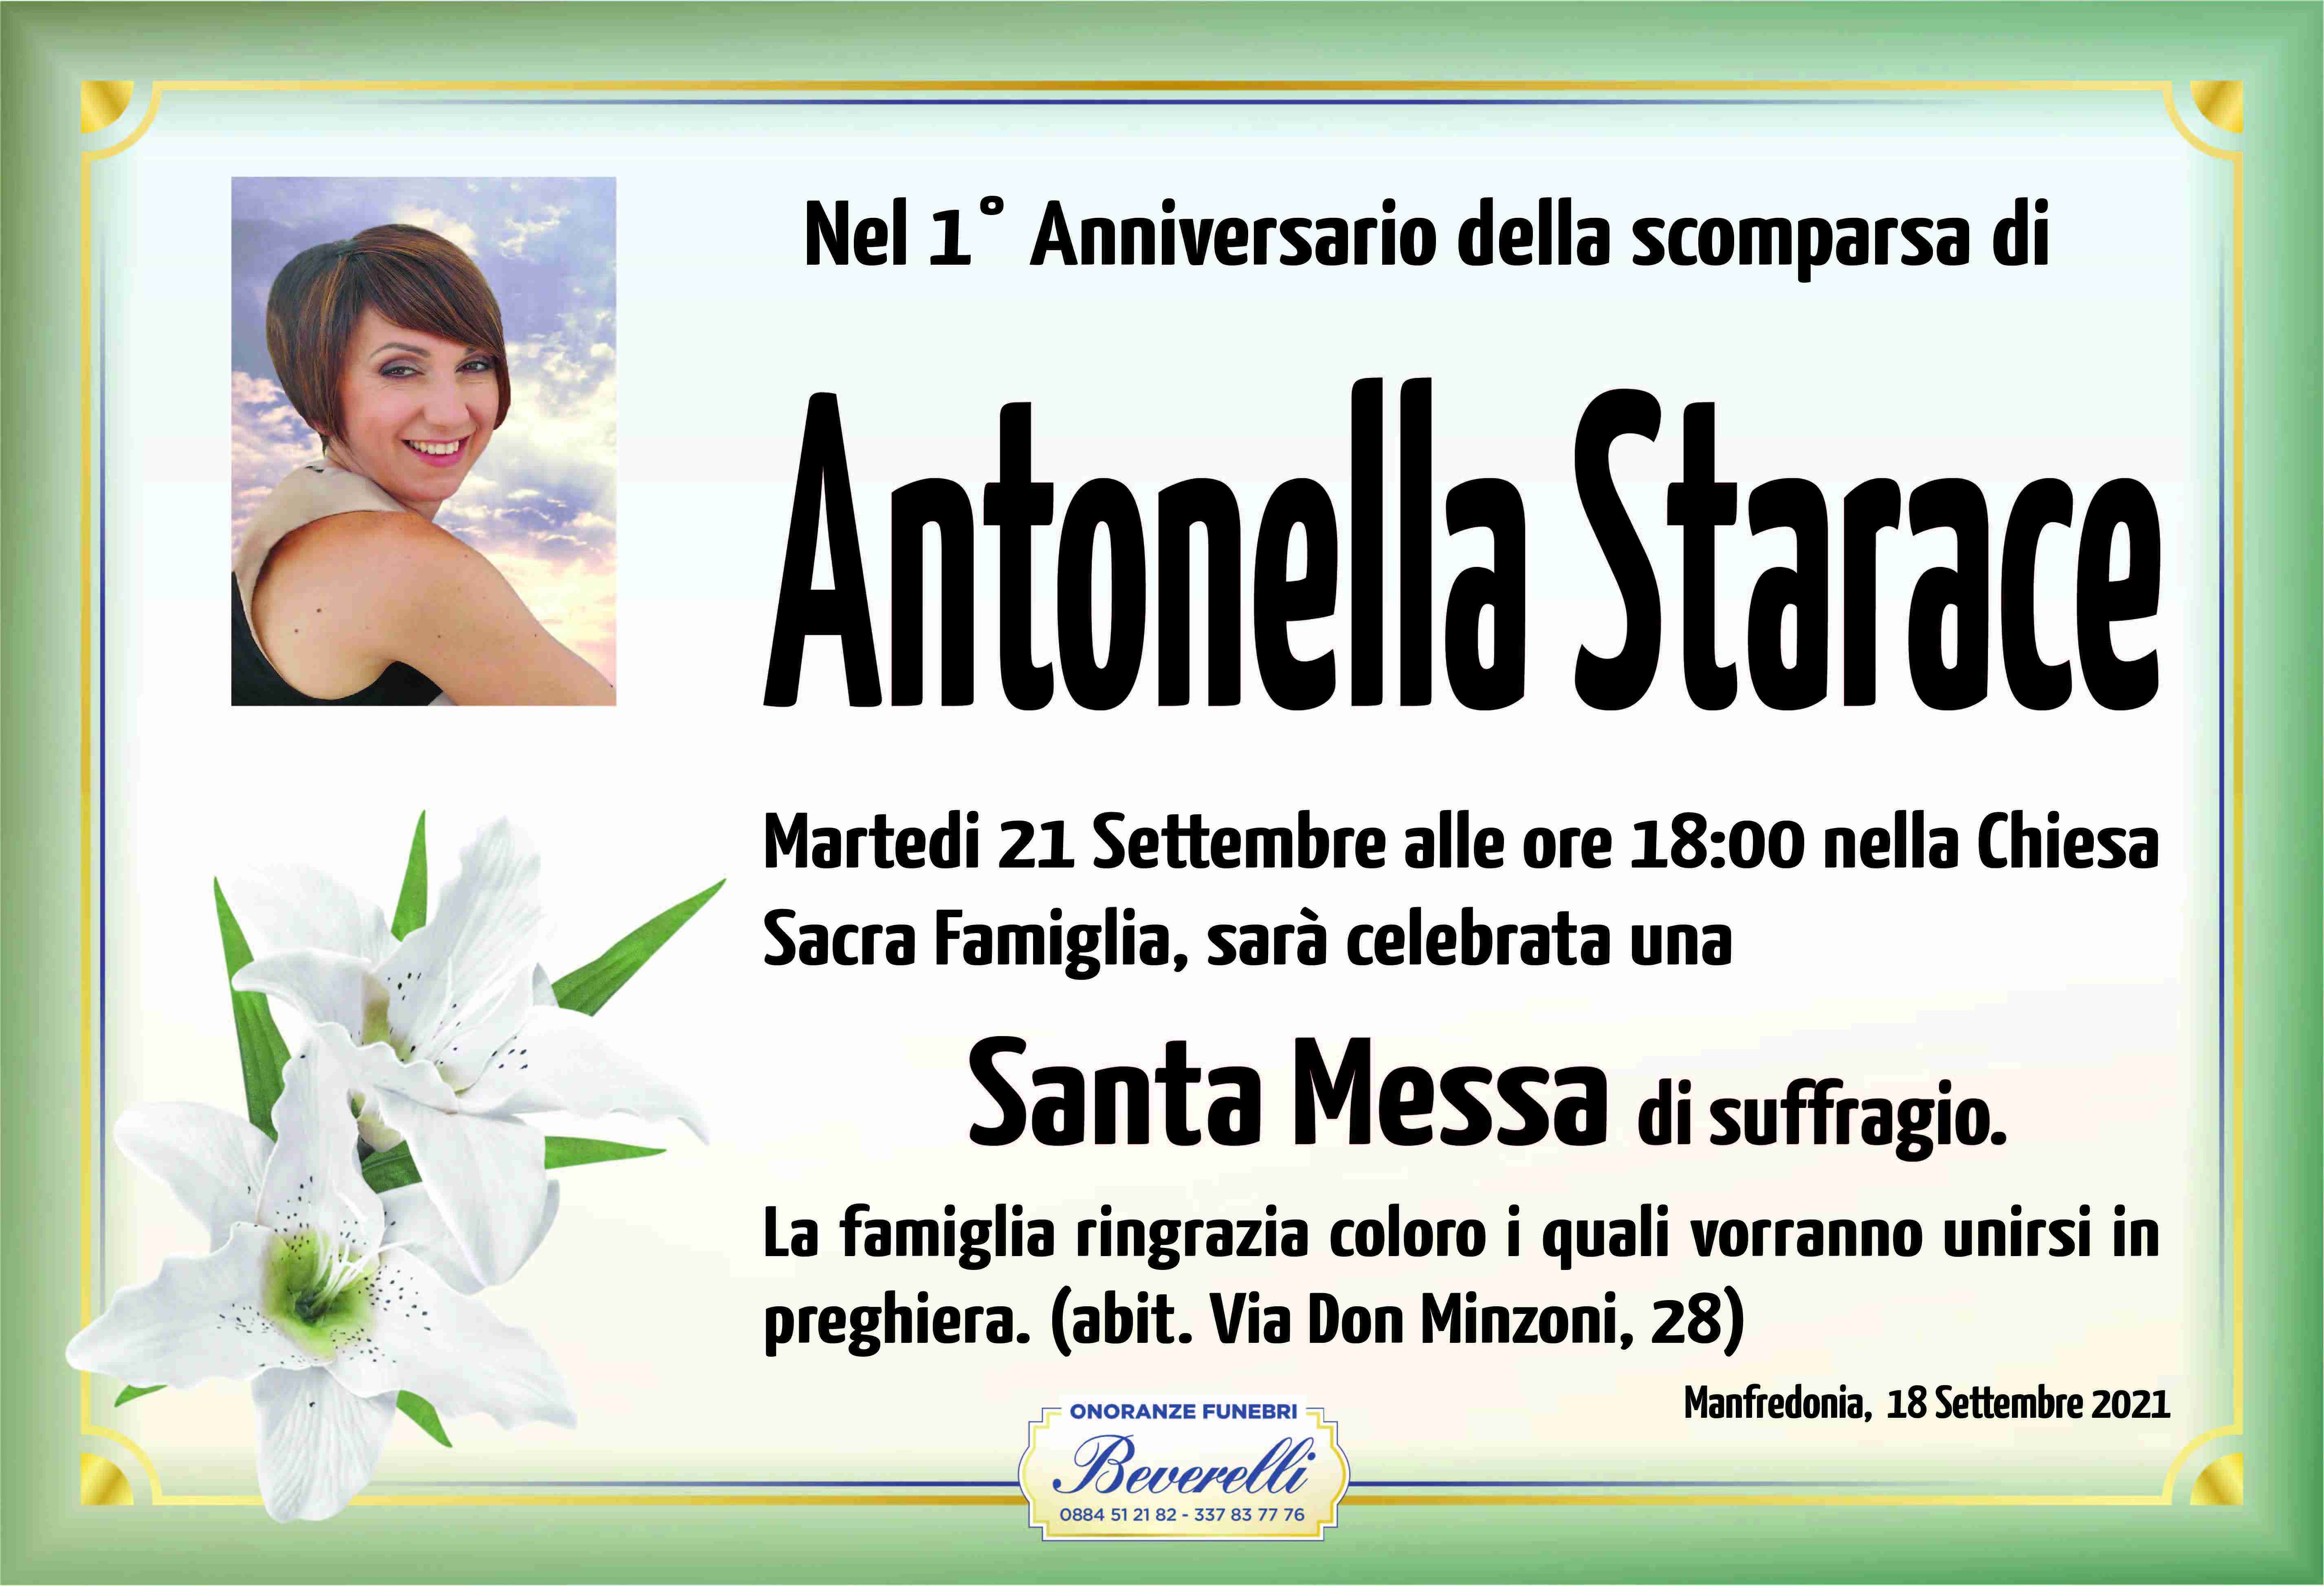 Antonella Starace